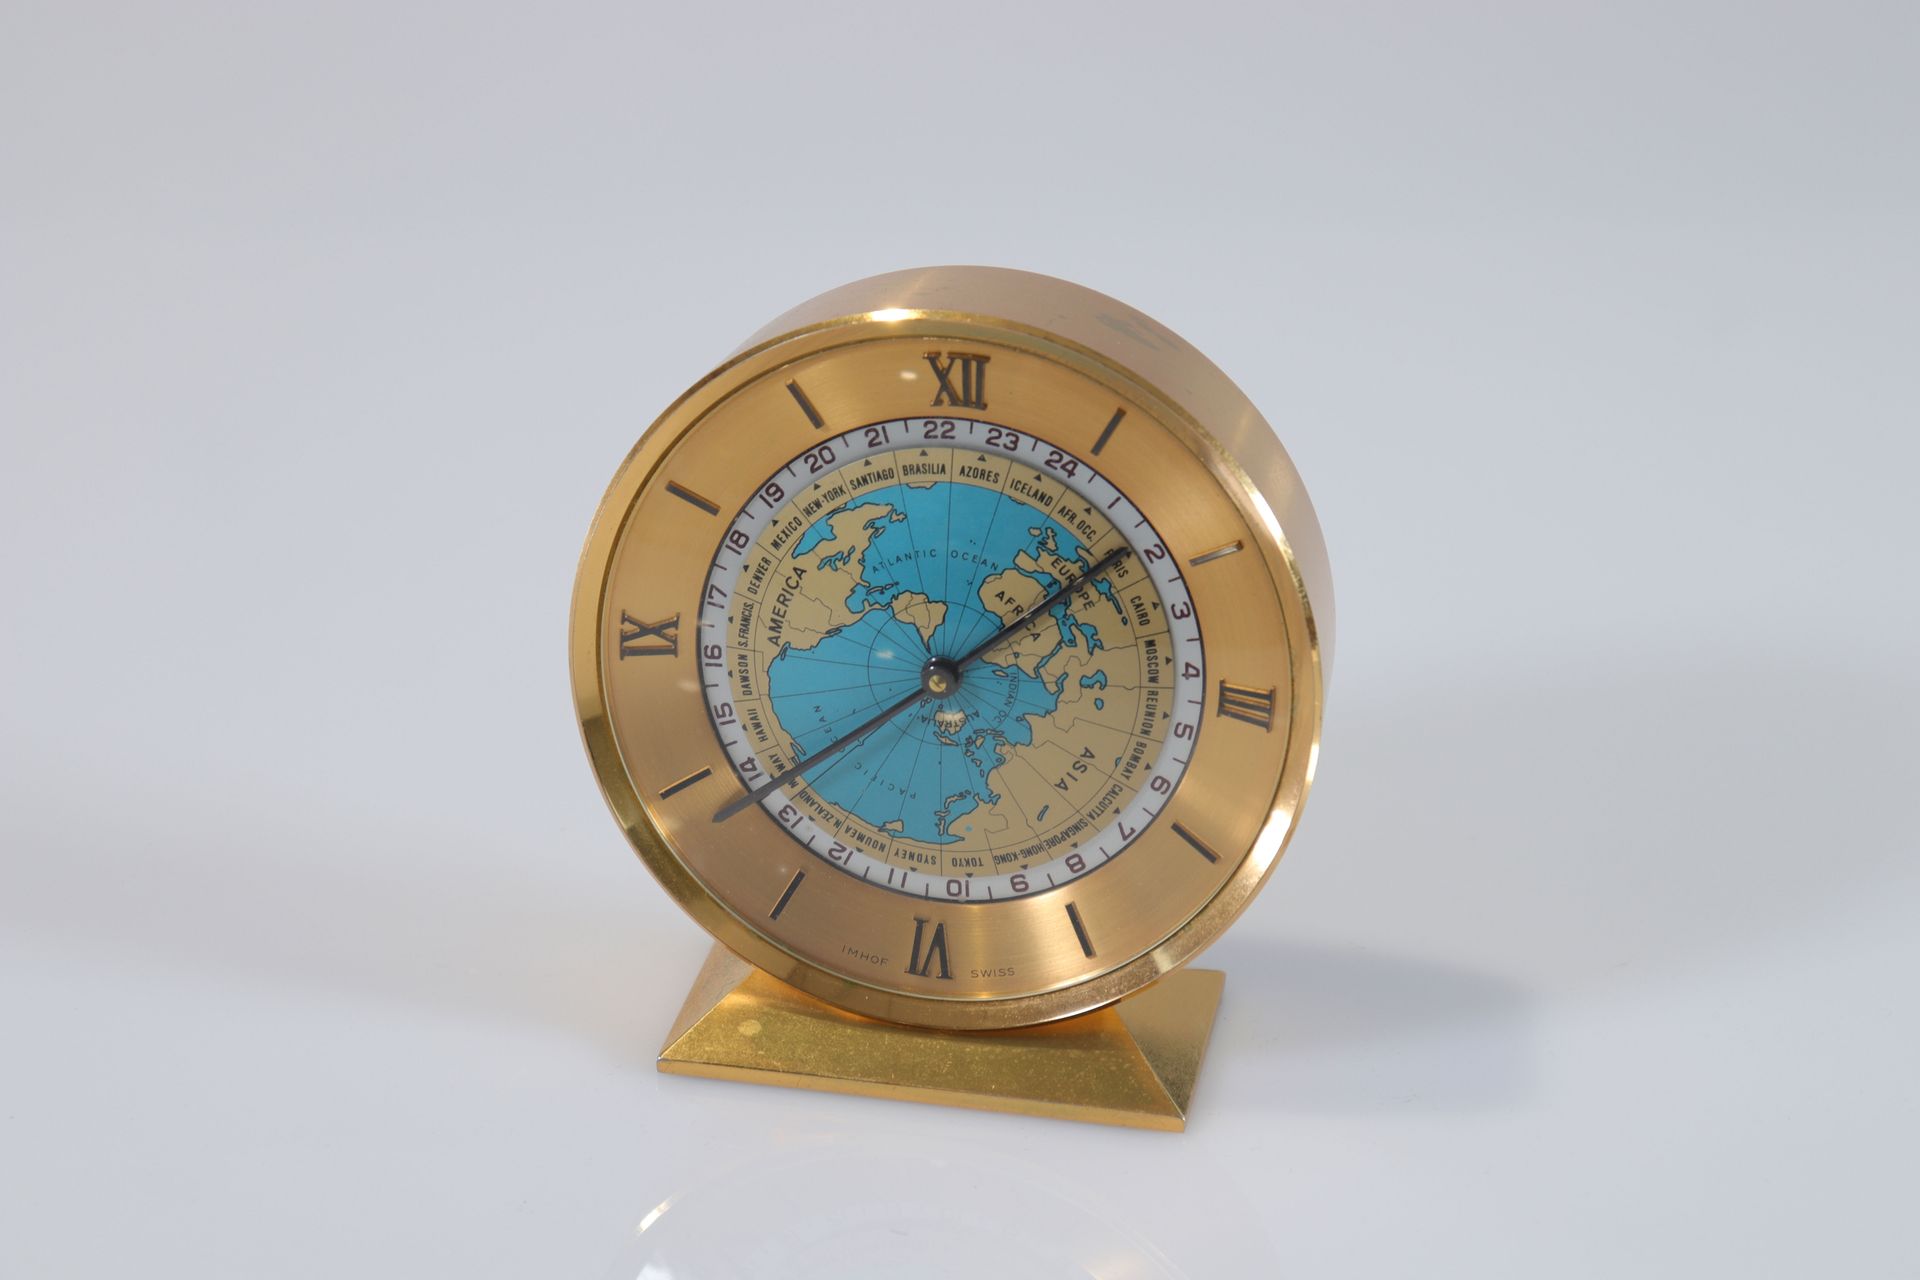 Suisse - Horloge Imhoff - 1960 Schweiz - Uhr Imhoff - 1960
Epoche: Xxième 
Abmes&hellip;